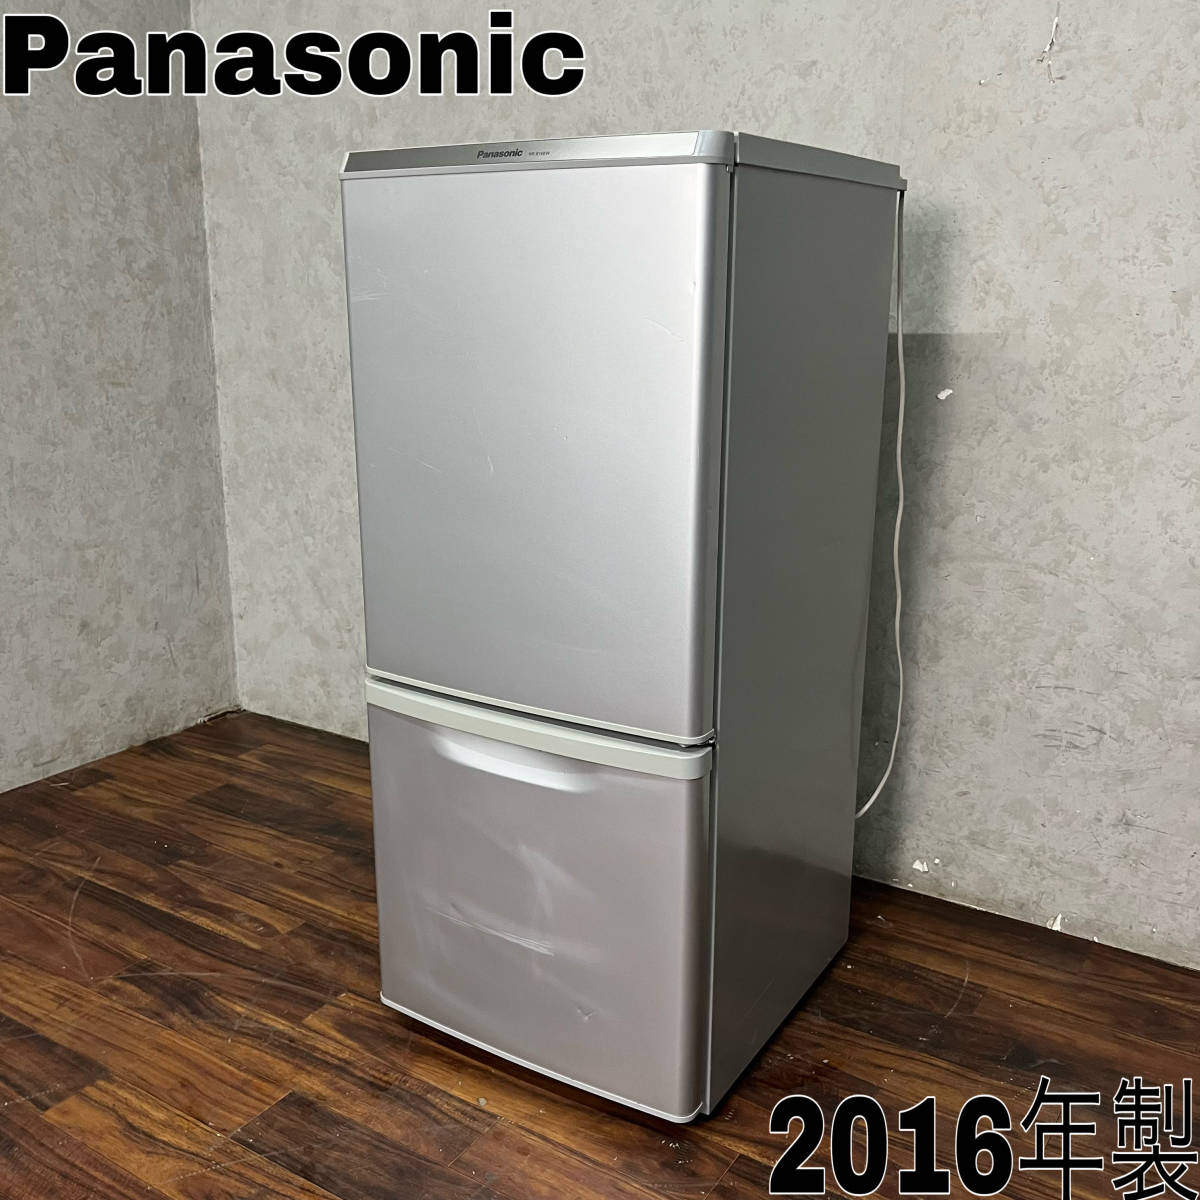 送料無料 Panasonic パナソニック NR-E414V-N ノンフロン冷凍冷蔵庫 5